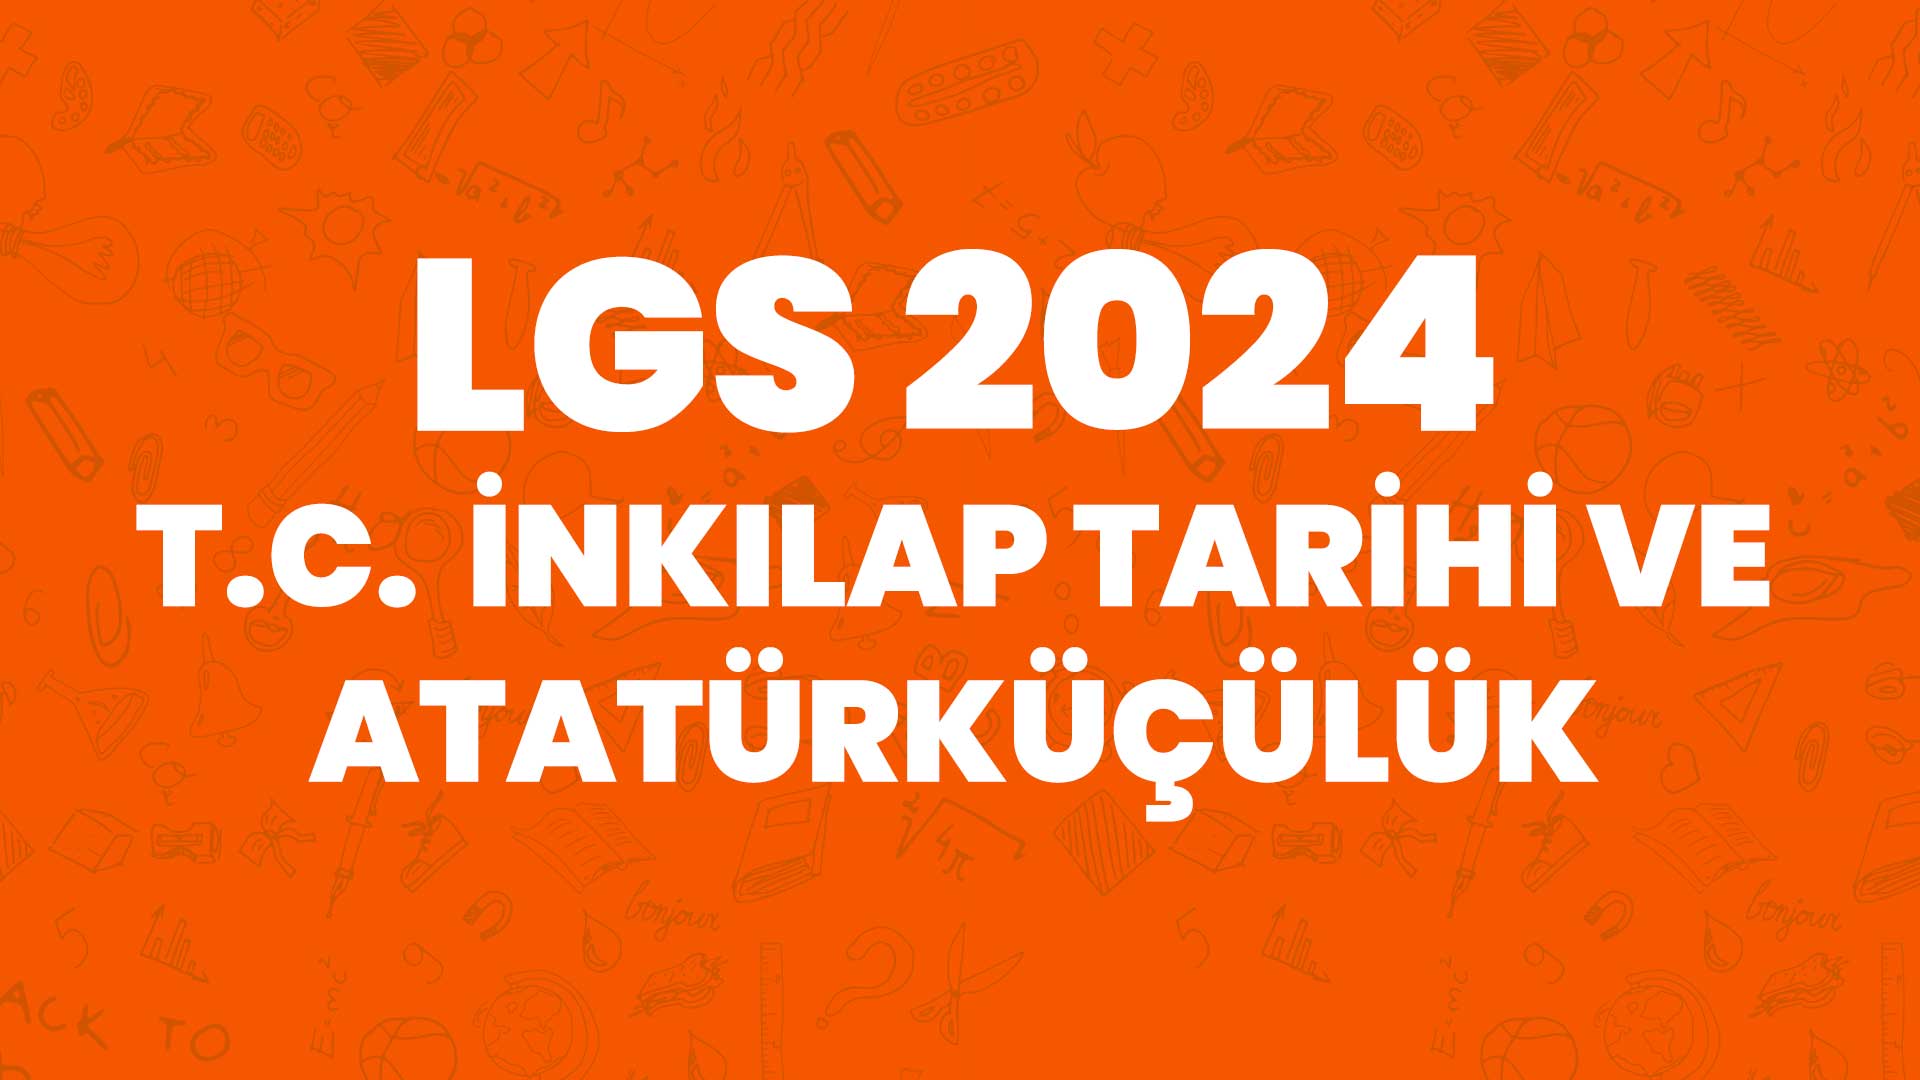 LGS 2024 T.C. İnkılap Tarihi ve Atatürkçülük